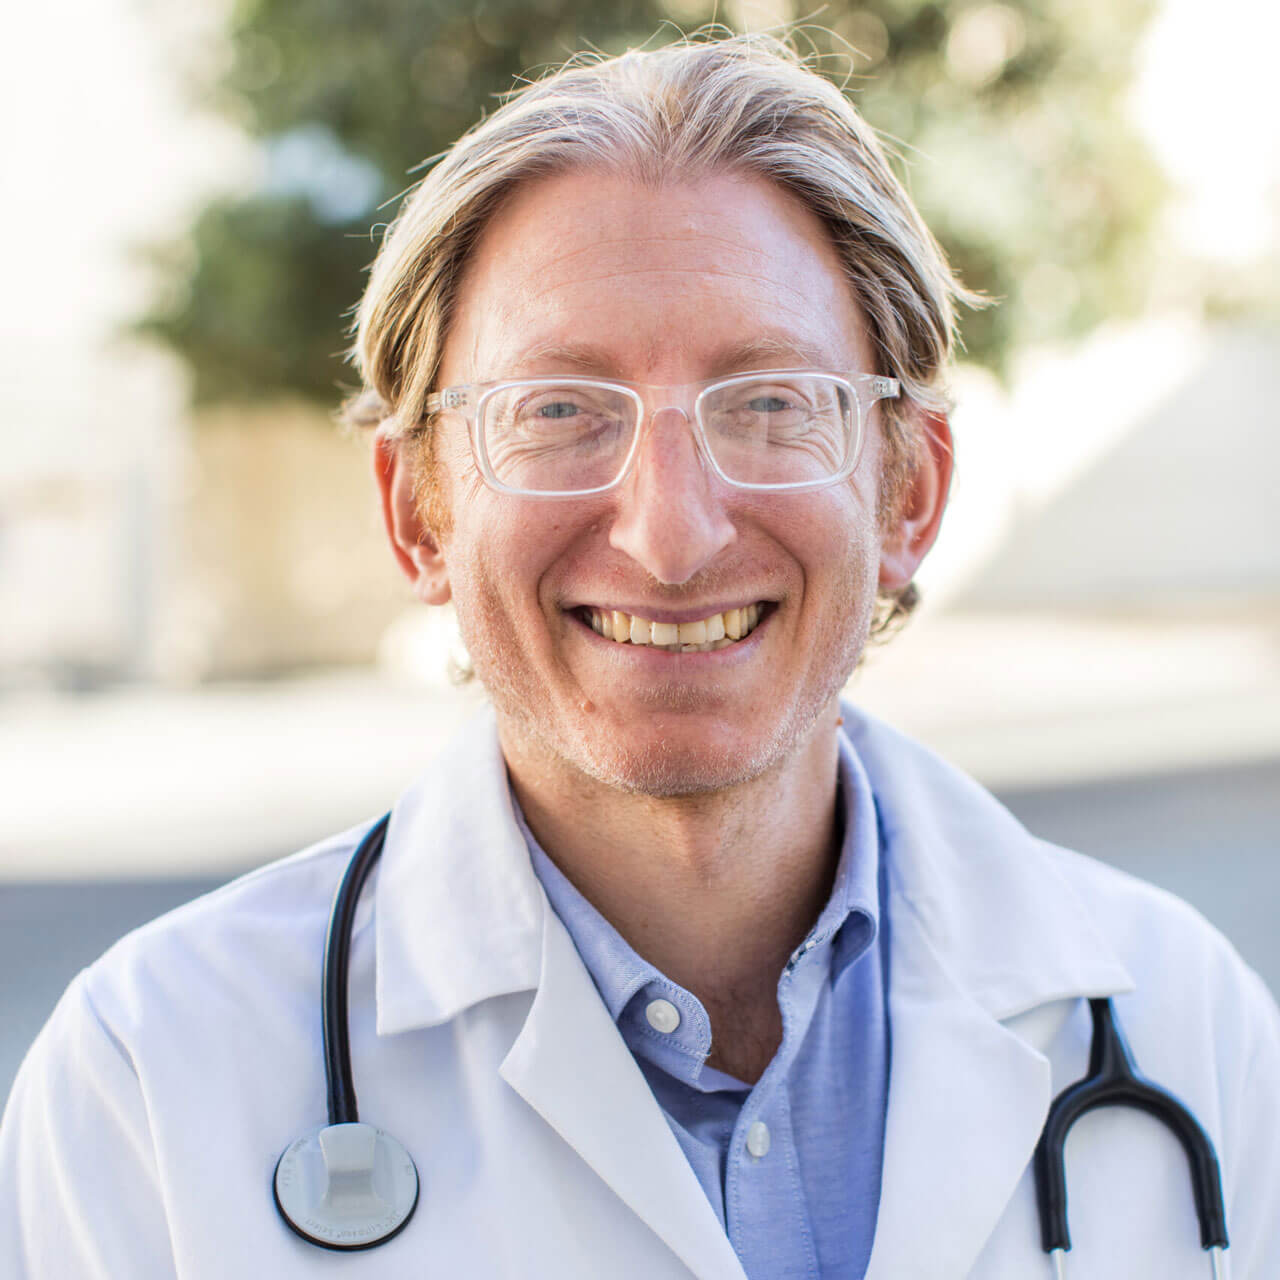 Dr. Scott Sherr